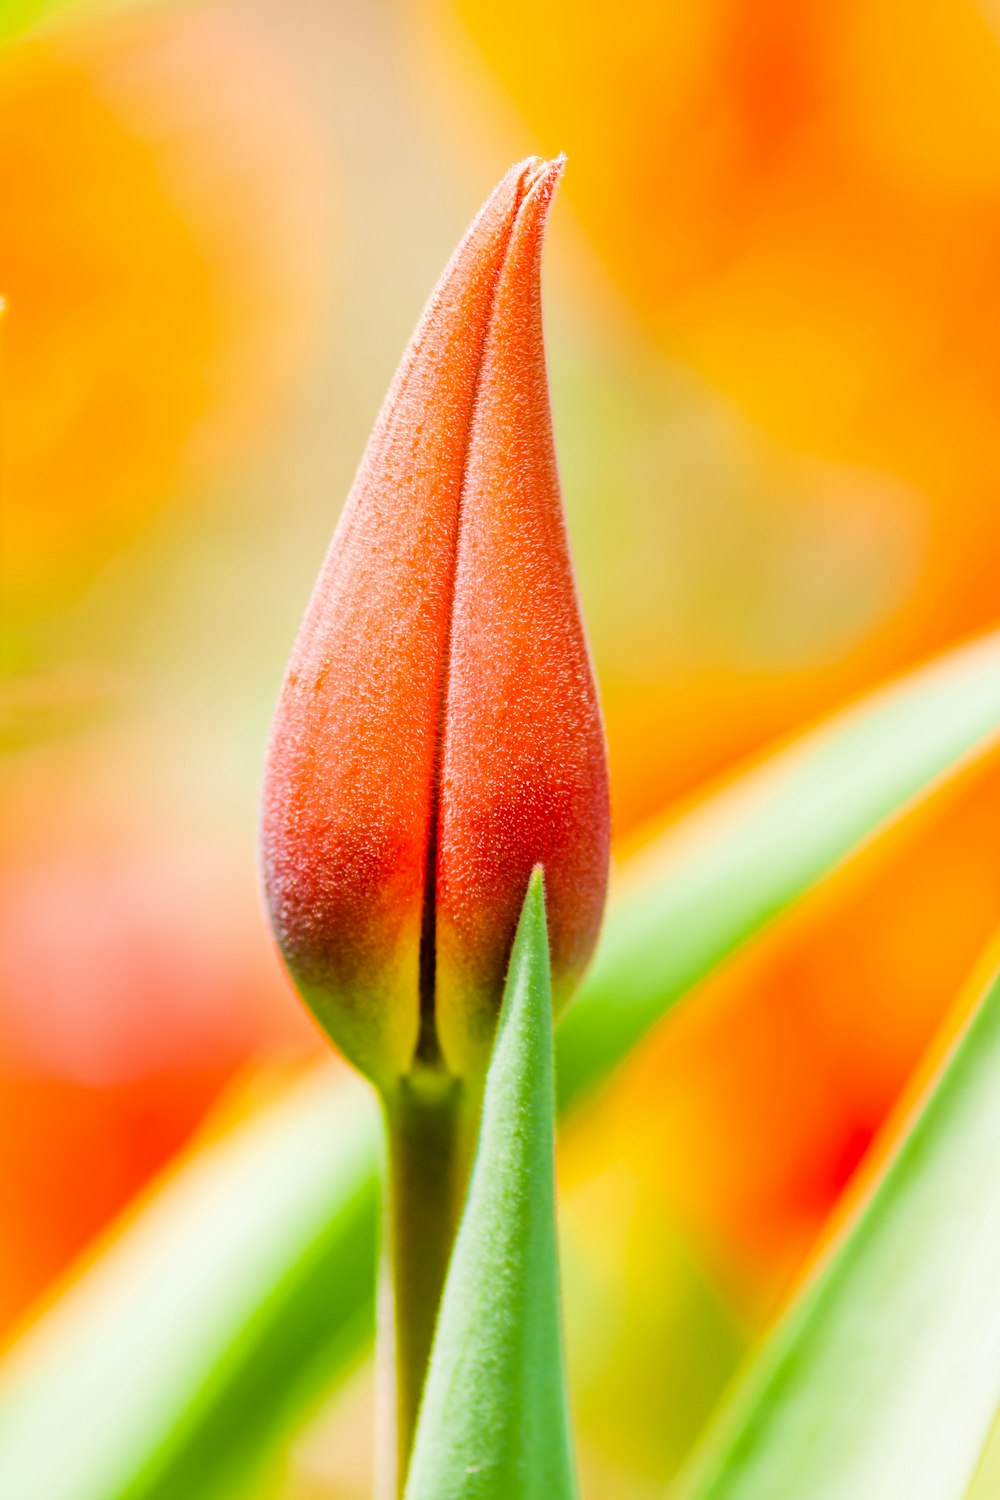 orange tulip bud